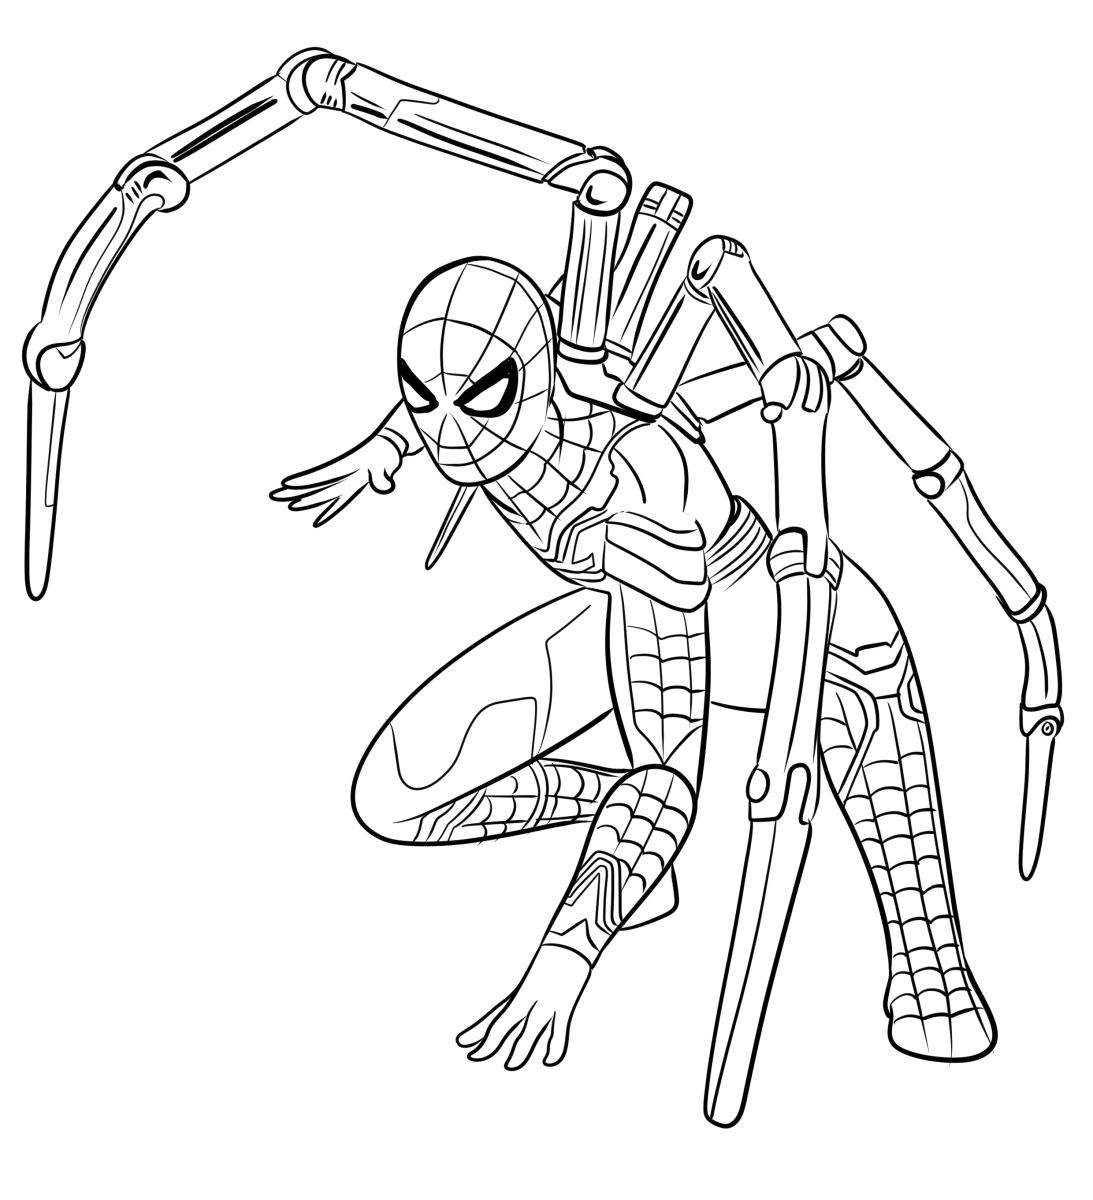 Spider-Man Iron spider suit by Jayuice on DeviantArt-saigonsouth.com.vn